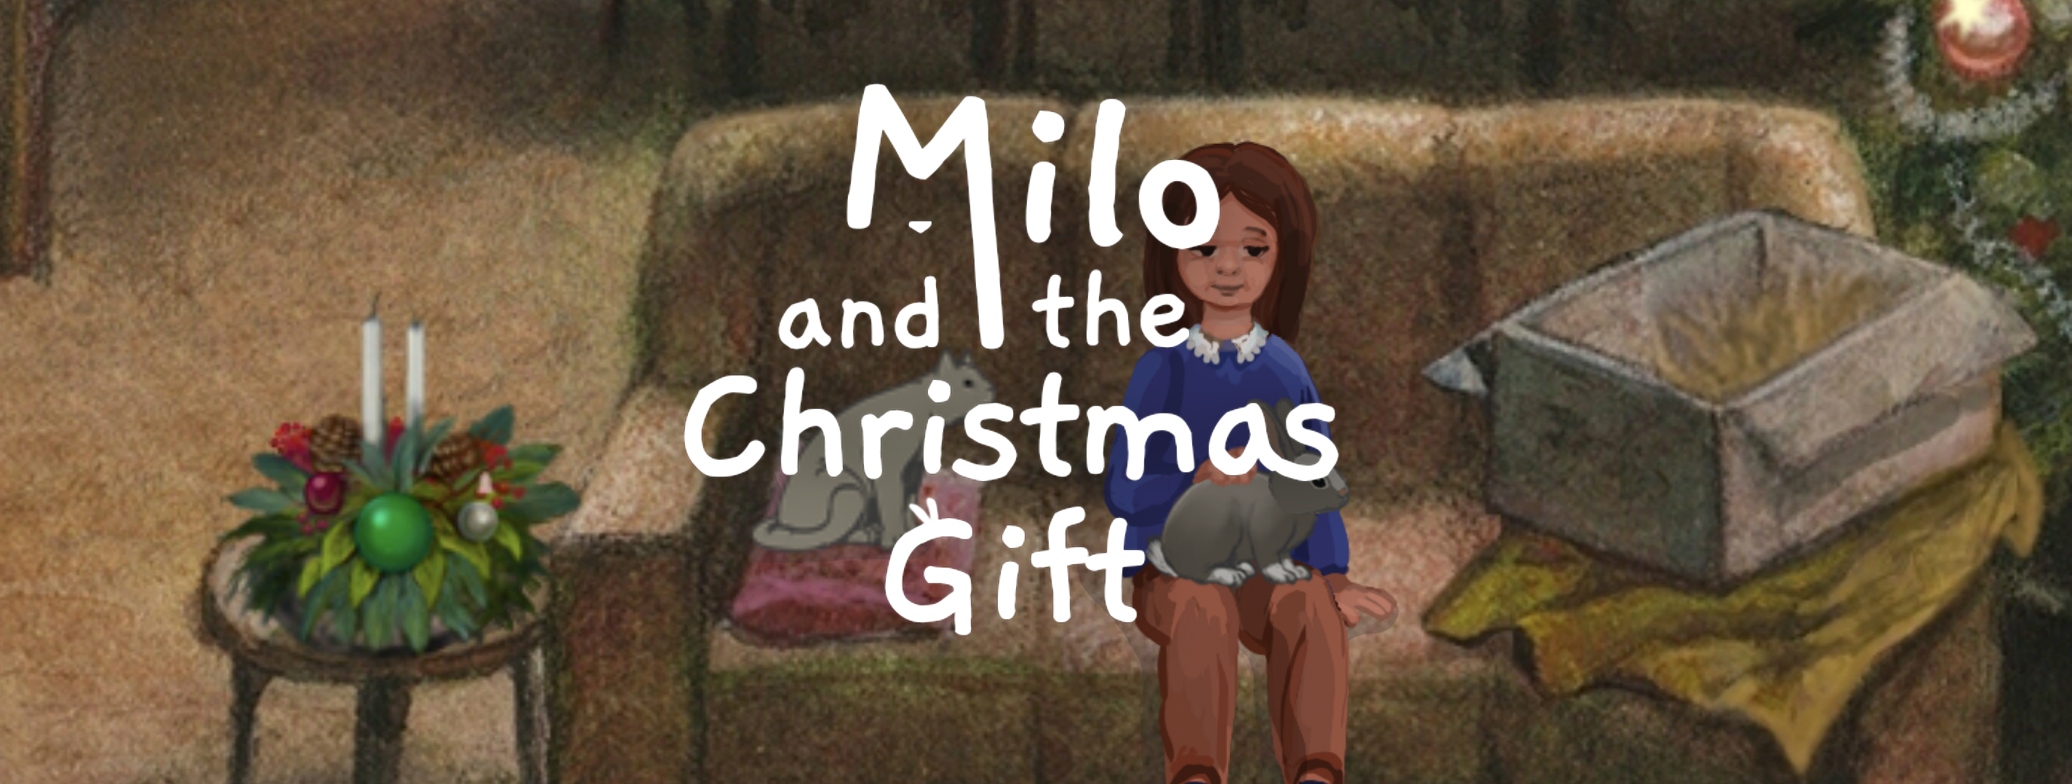 Milo and the Christmas Gift